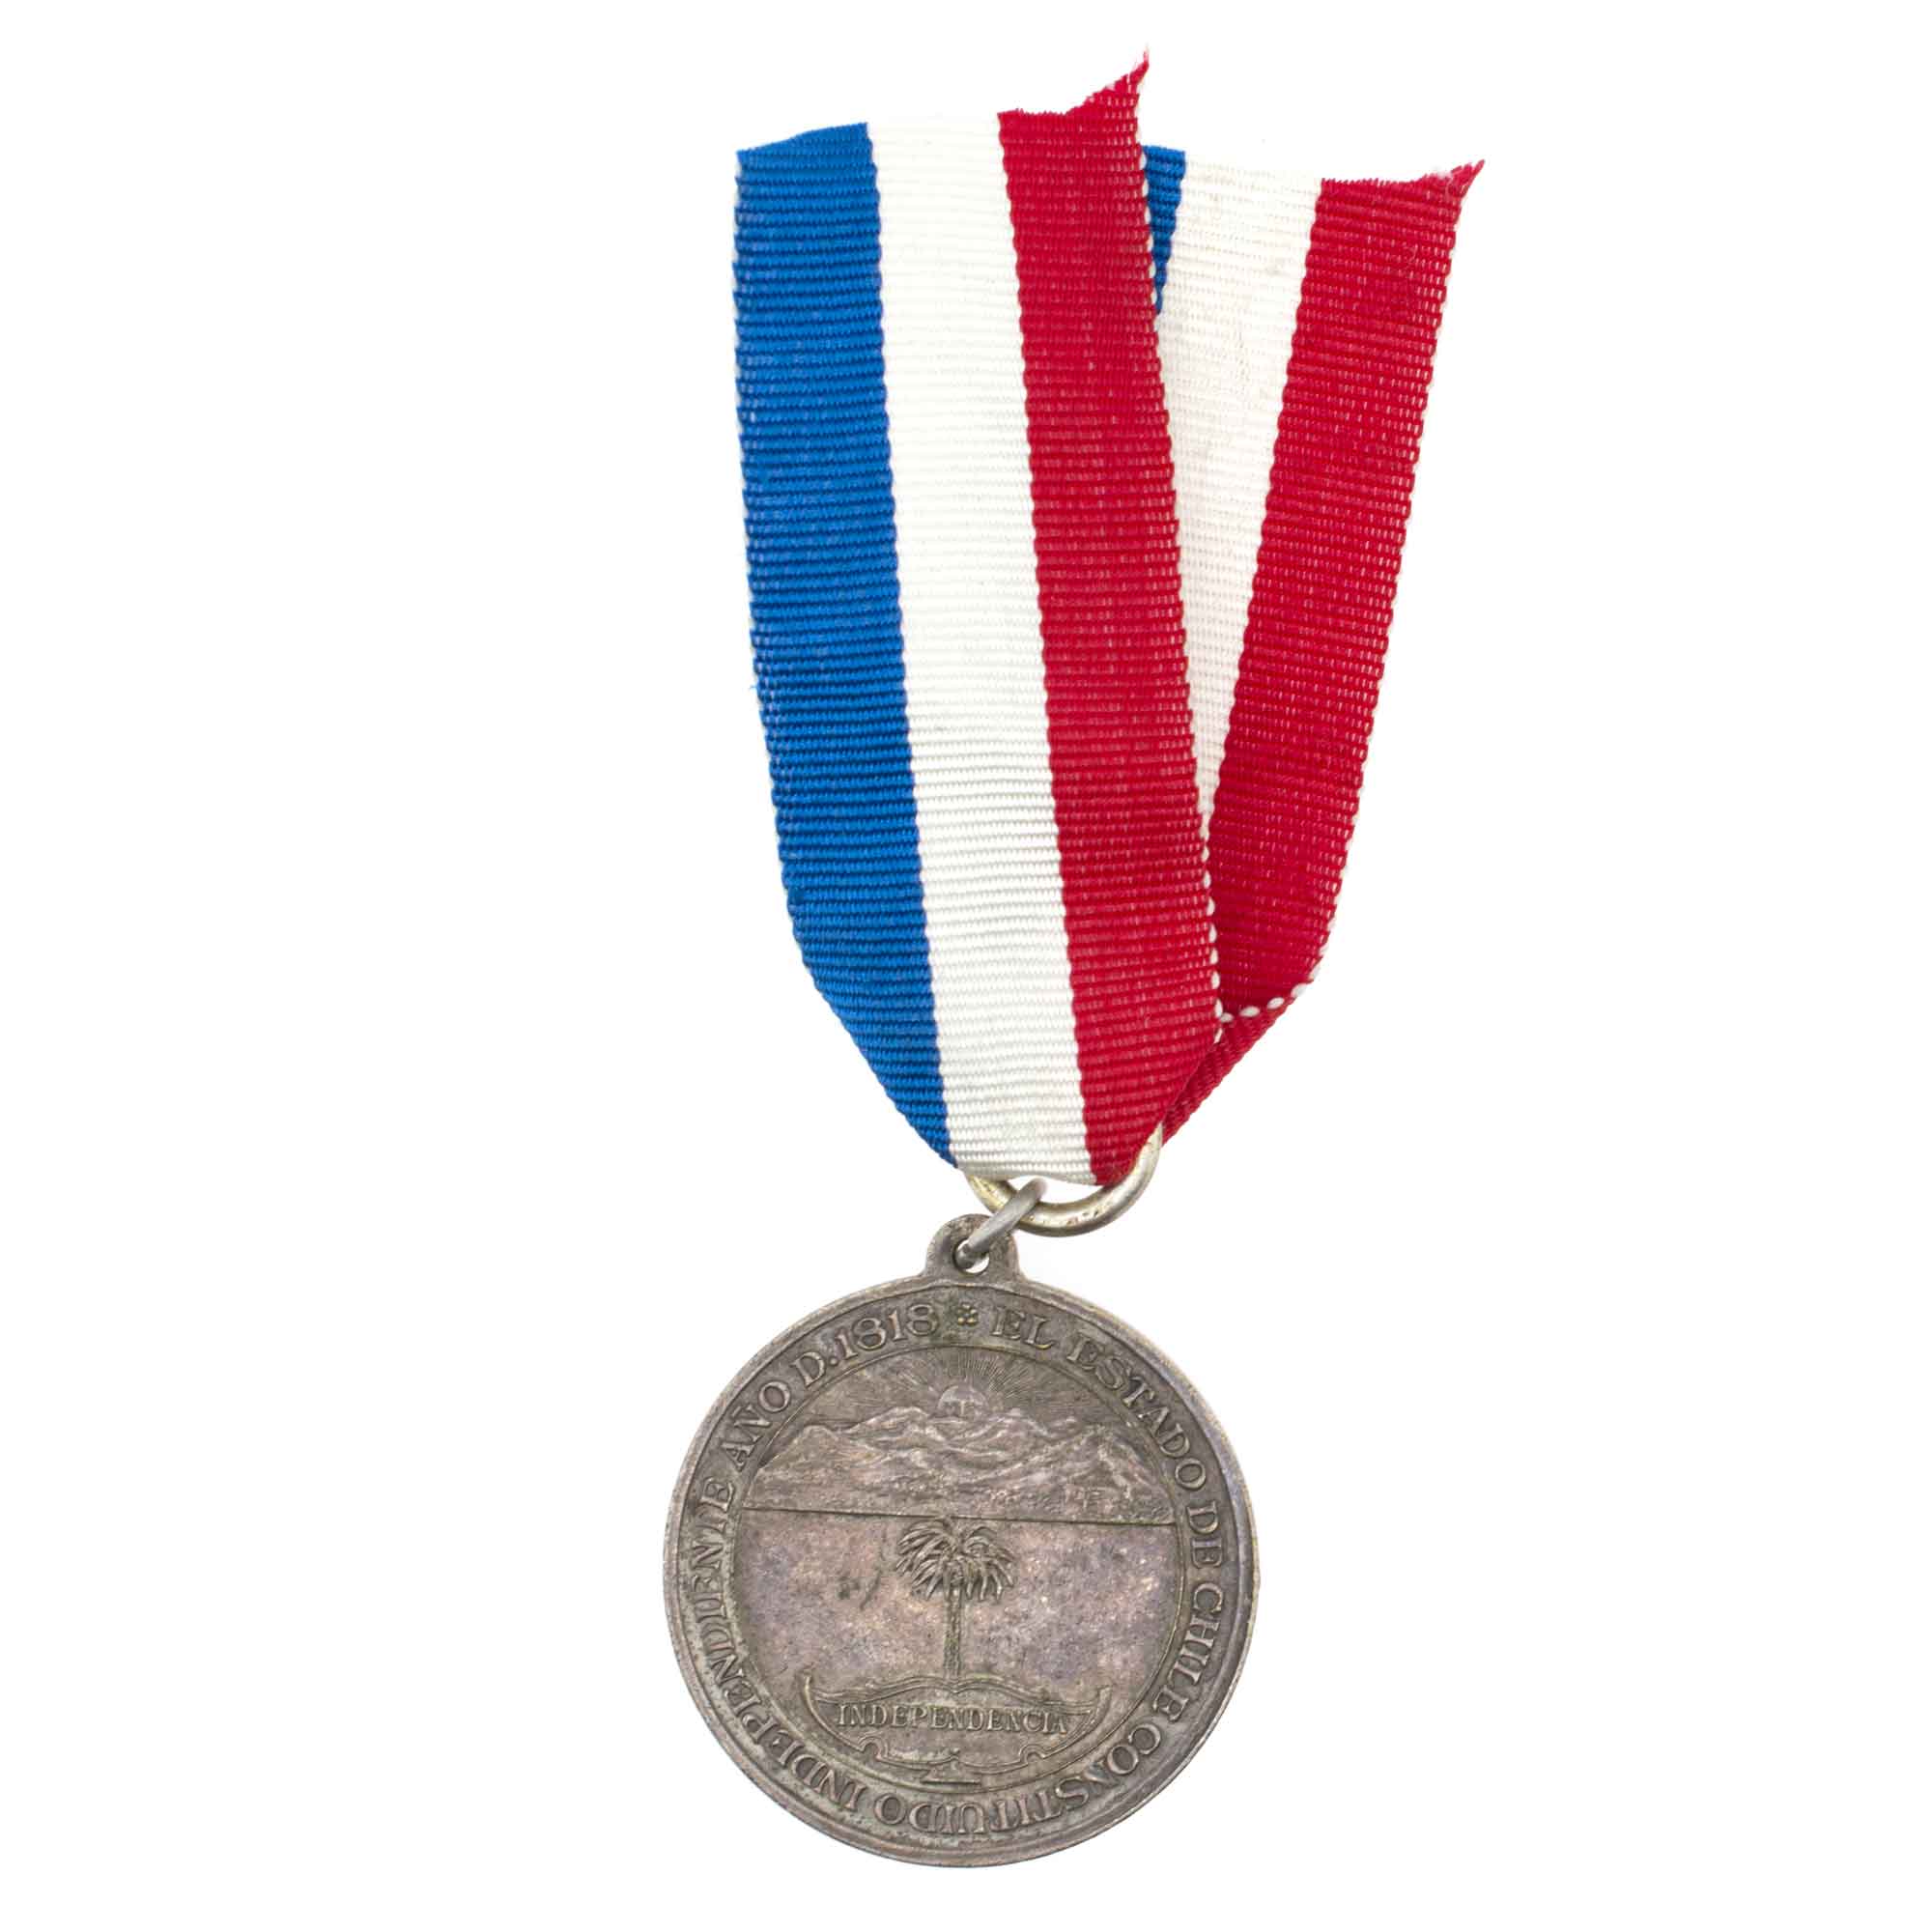 Чили. Медаль "100 лет Республики Чили 1810 - 1910 гг".